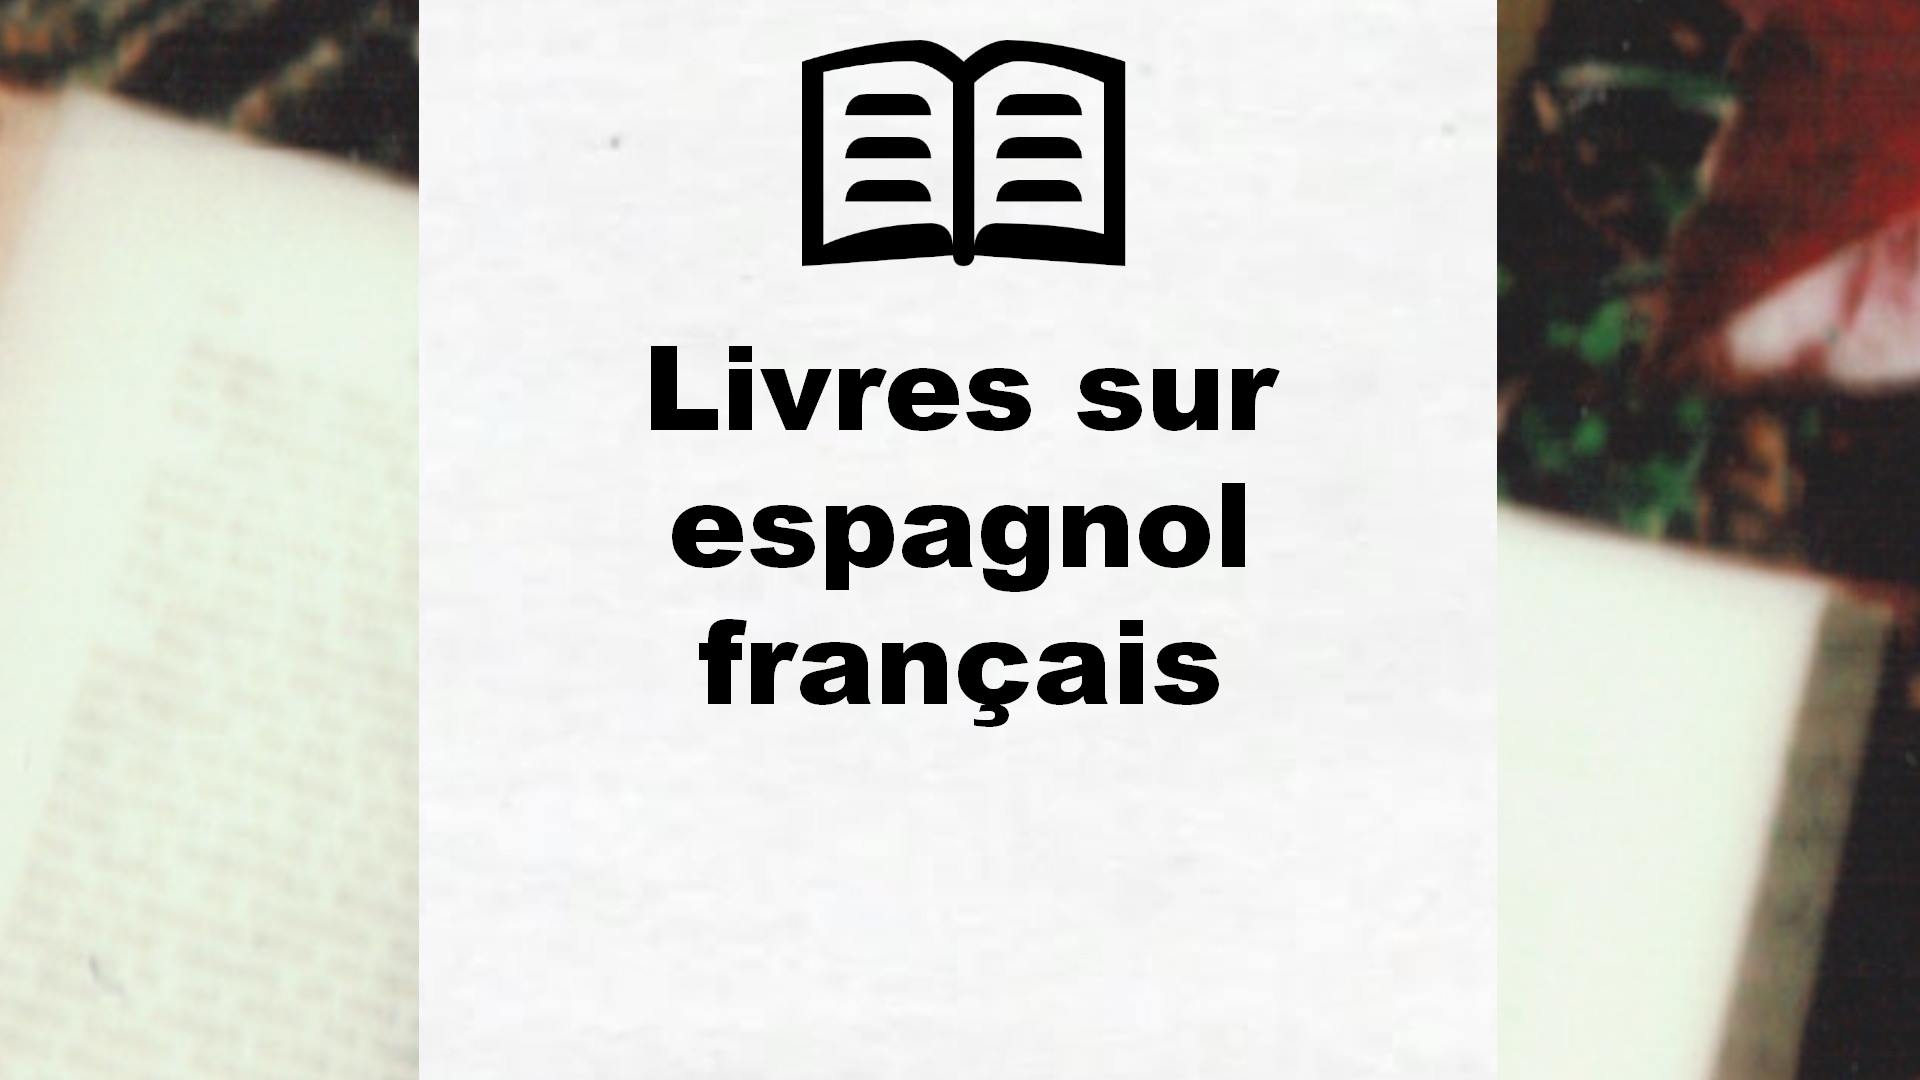 Livres sur espagnol français